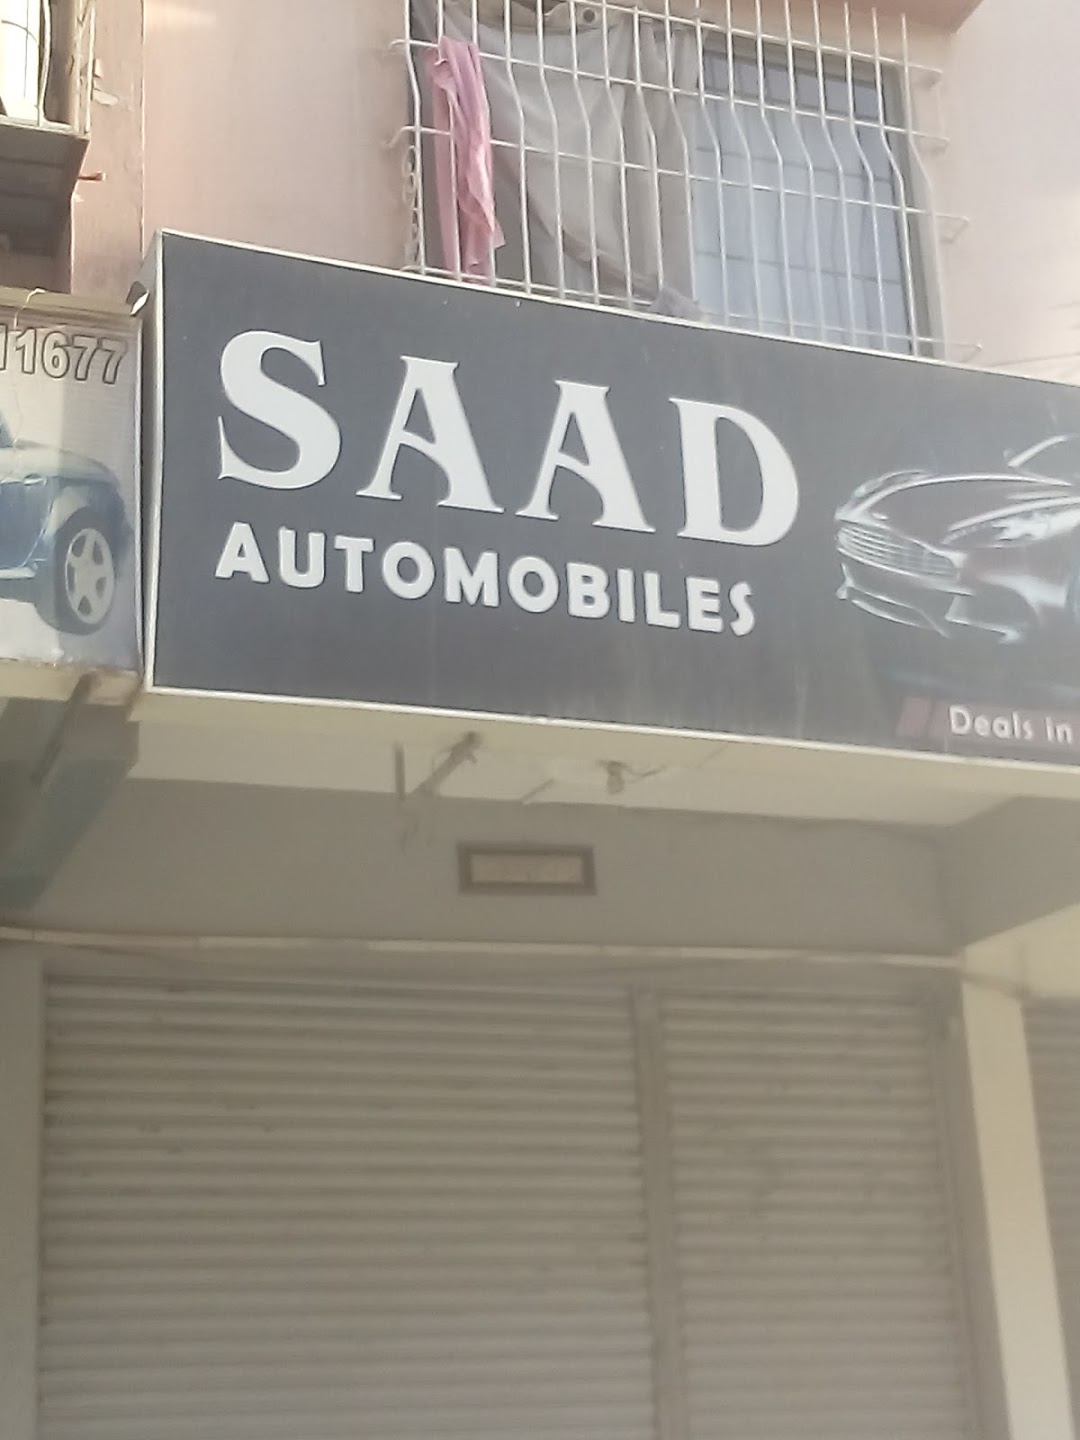 Saad Automobiles